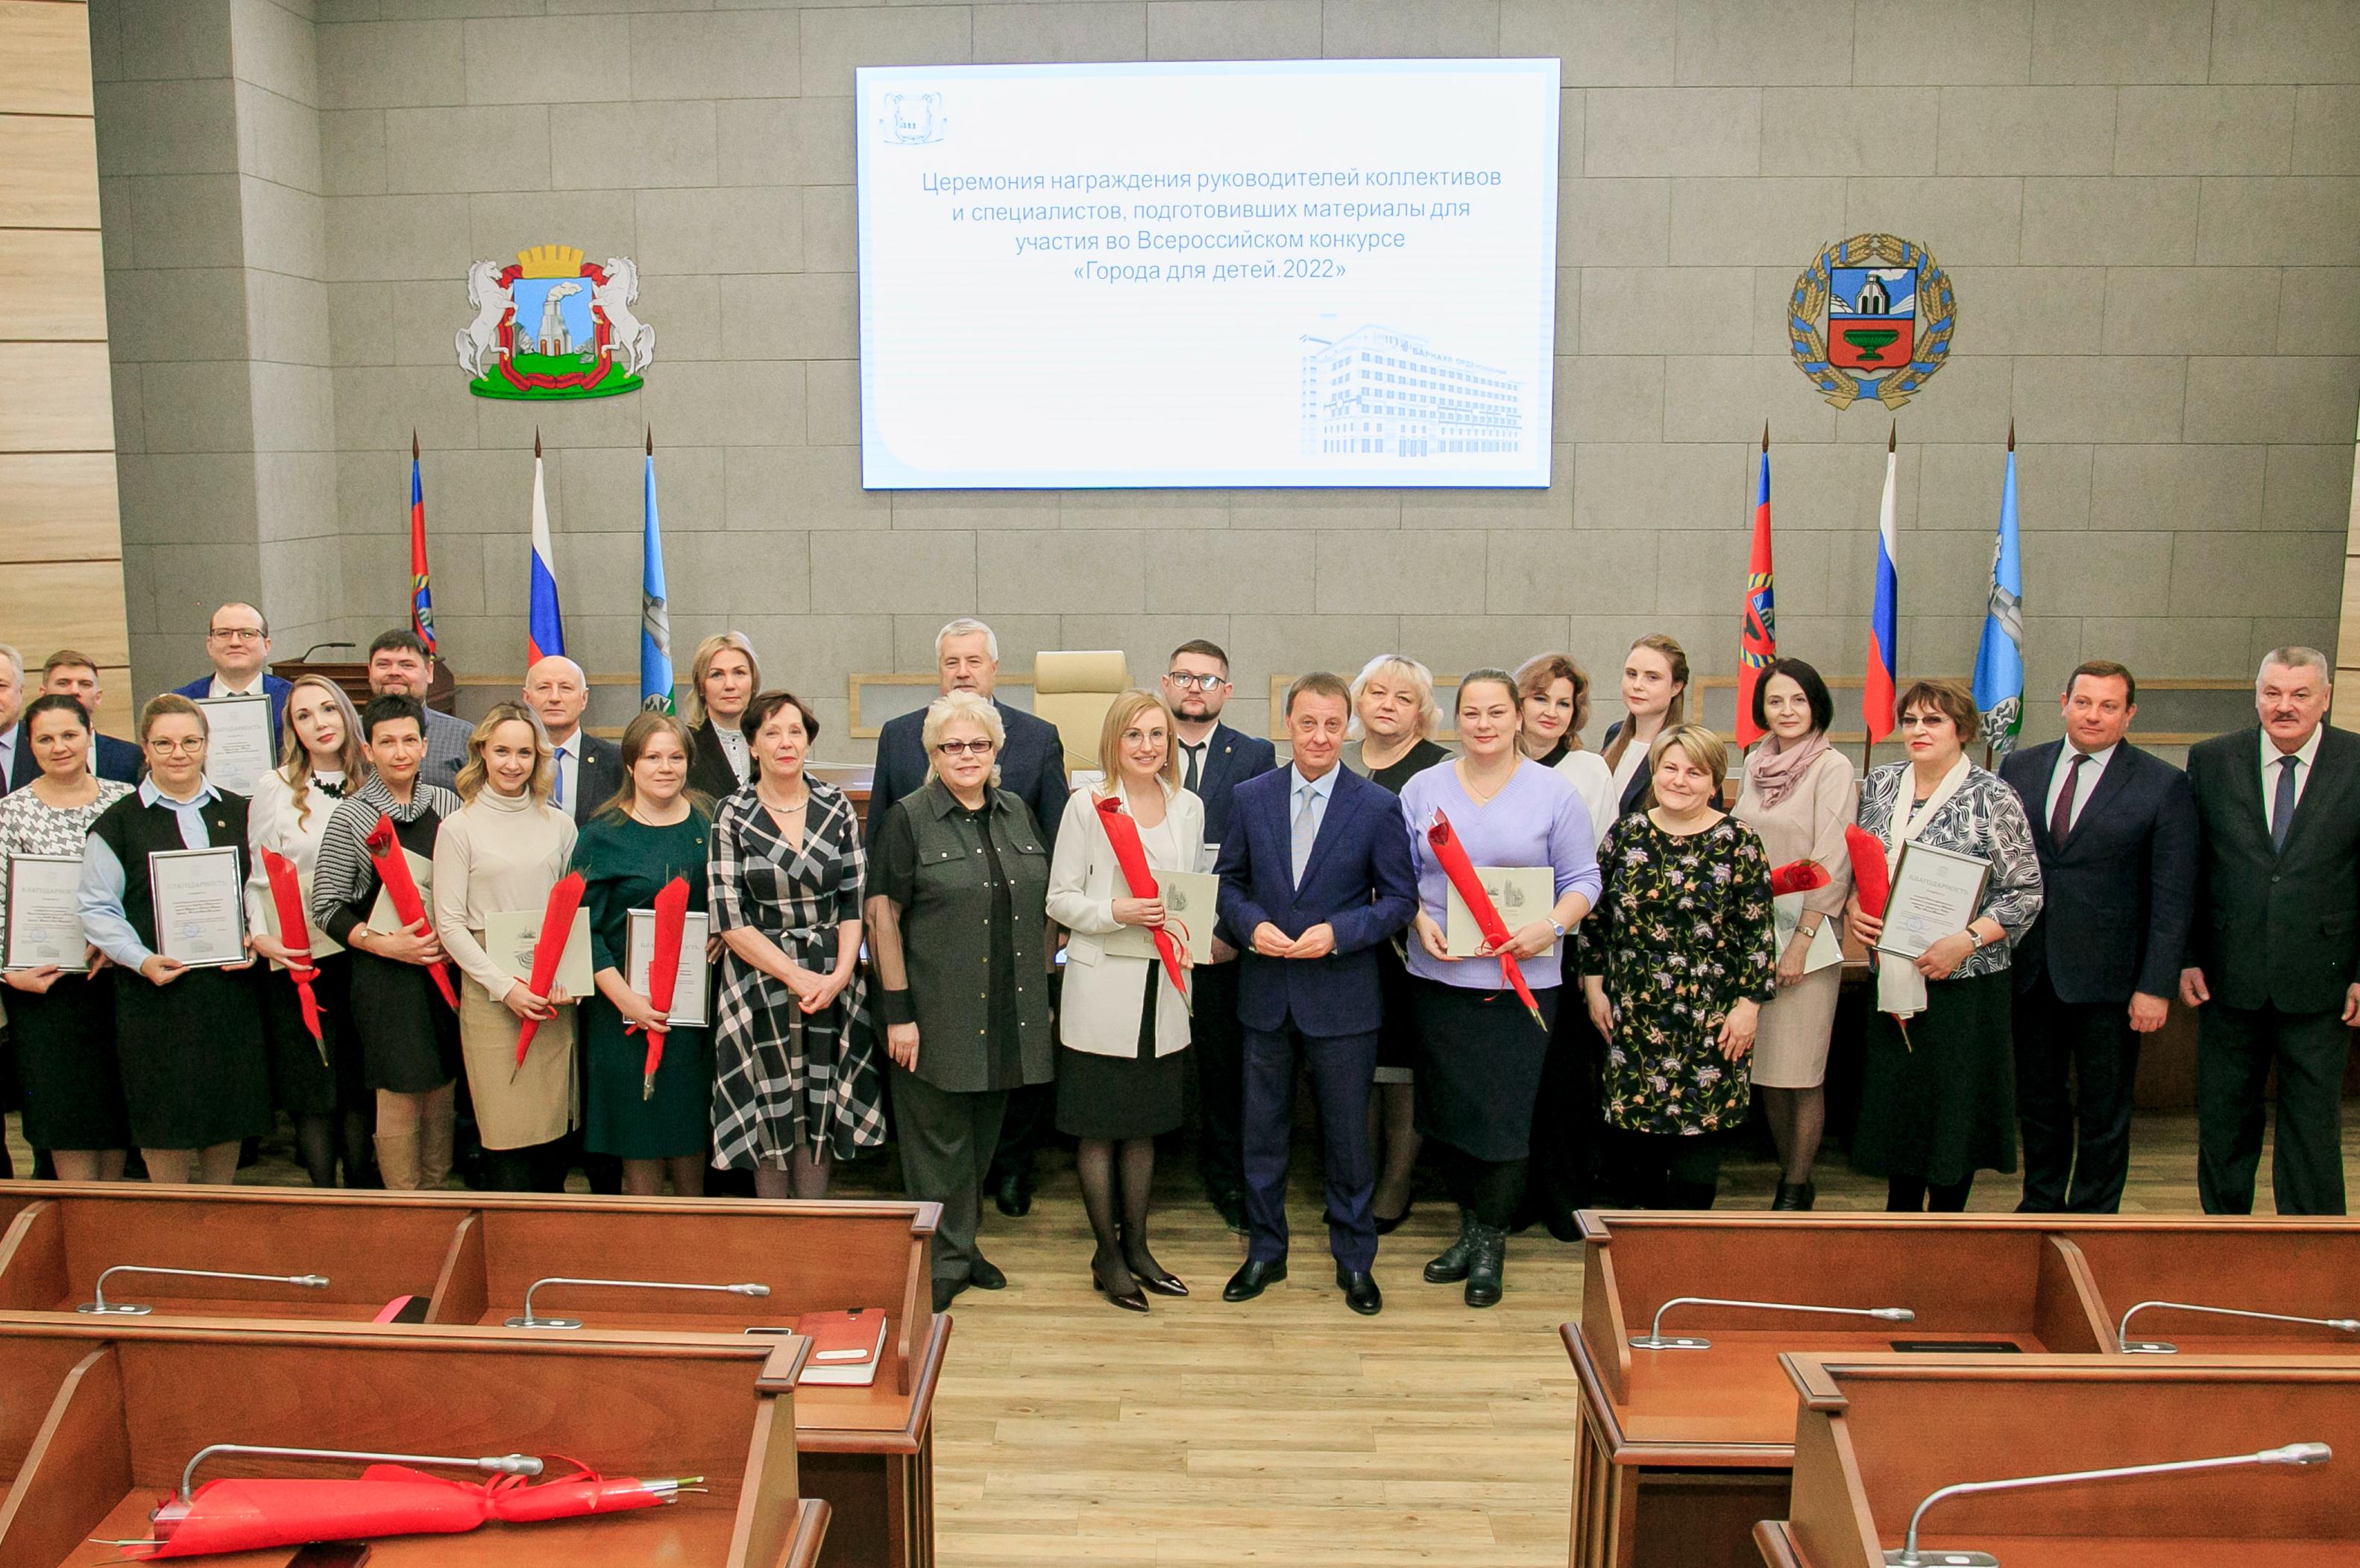 В Барнауле наградили победителей конкурса «Города для детей.2022»